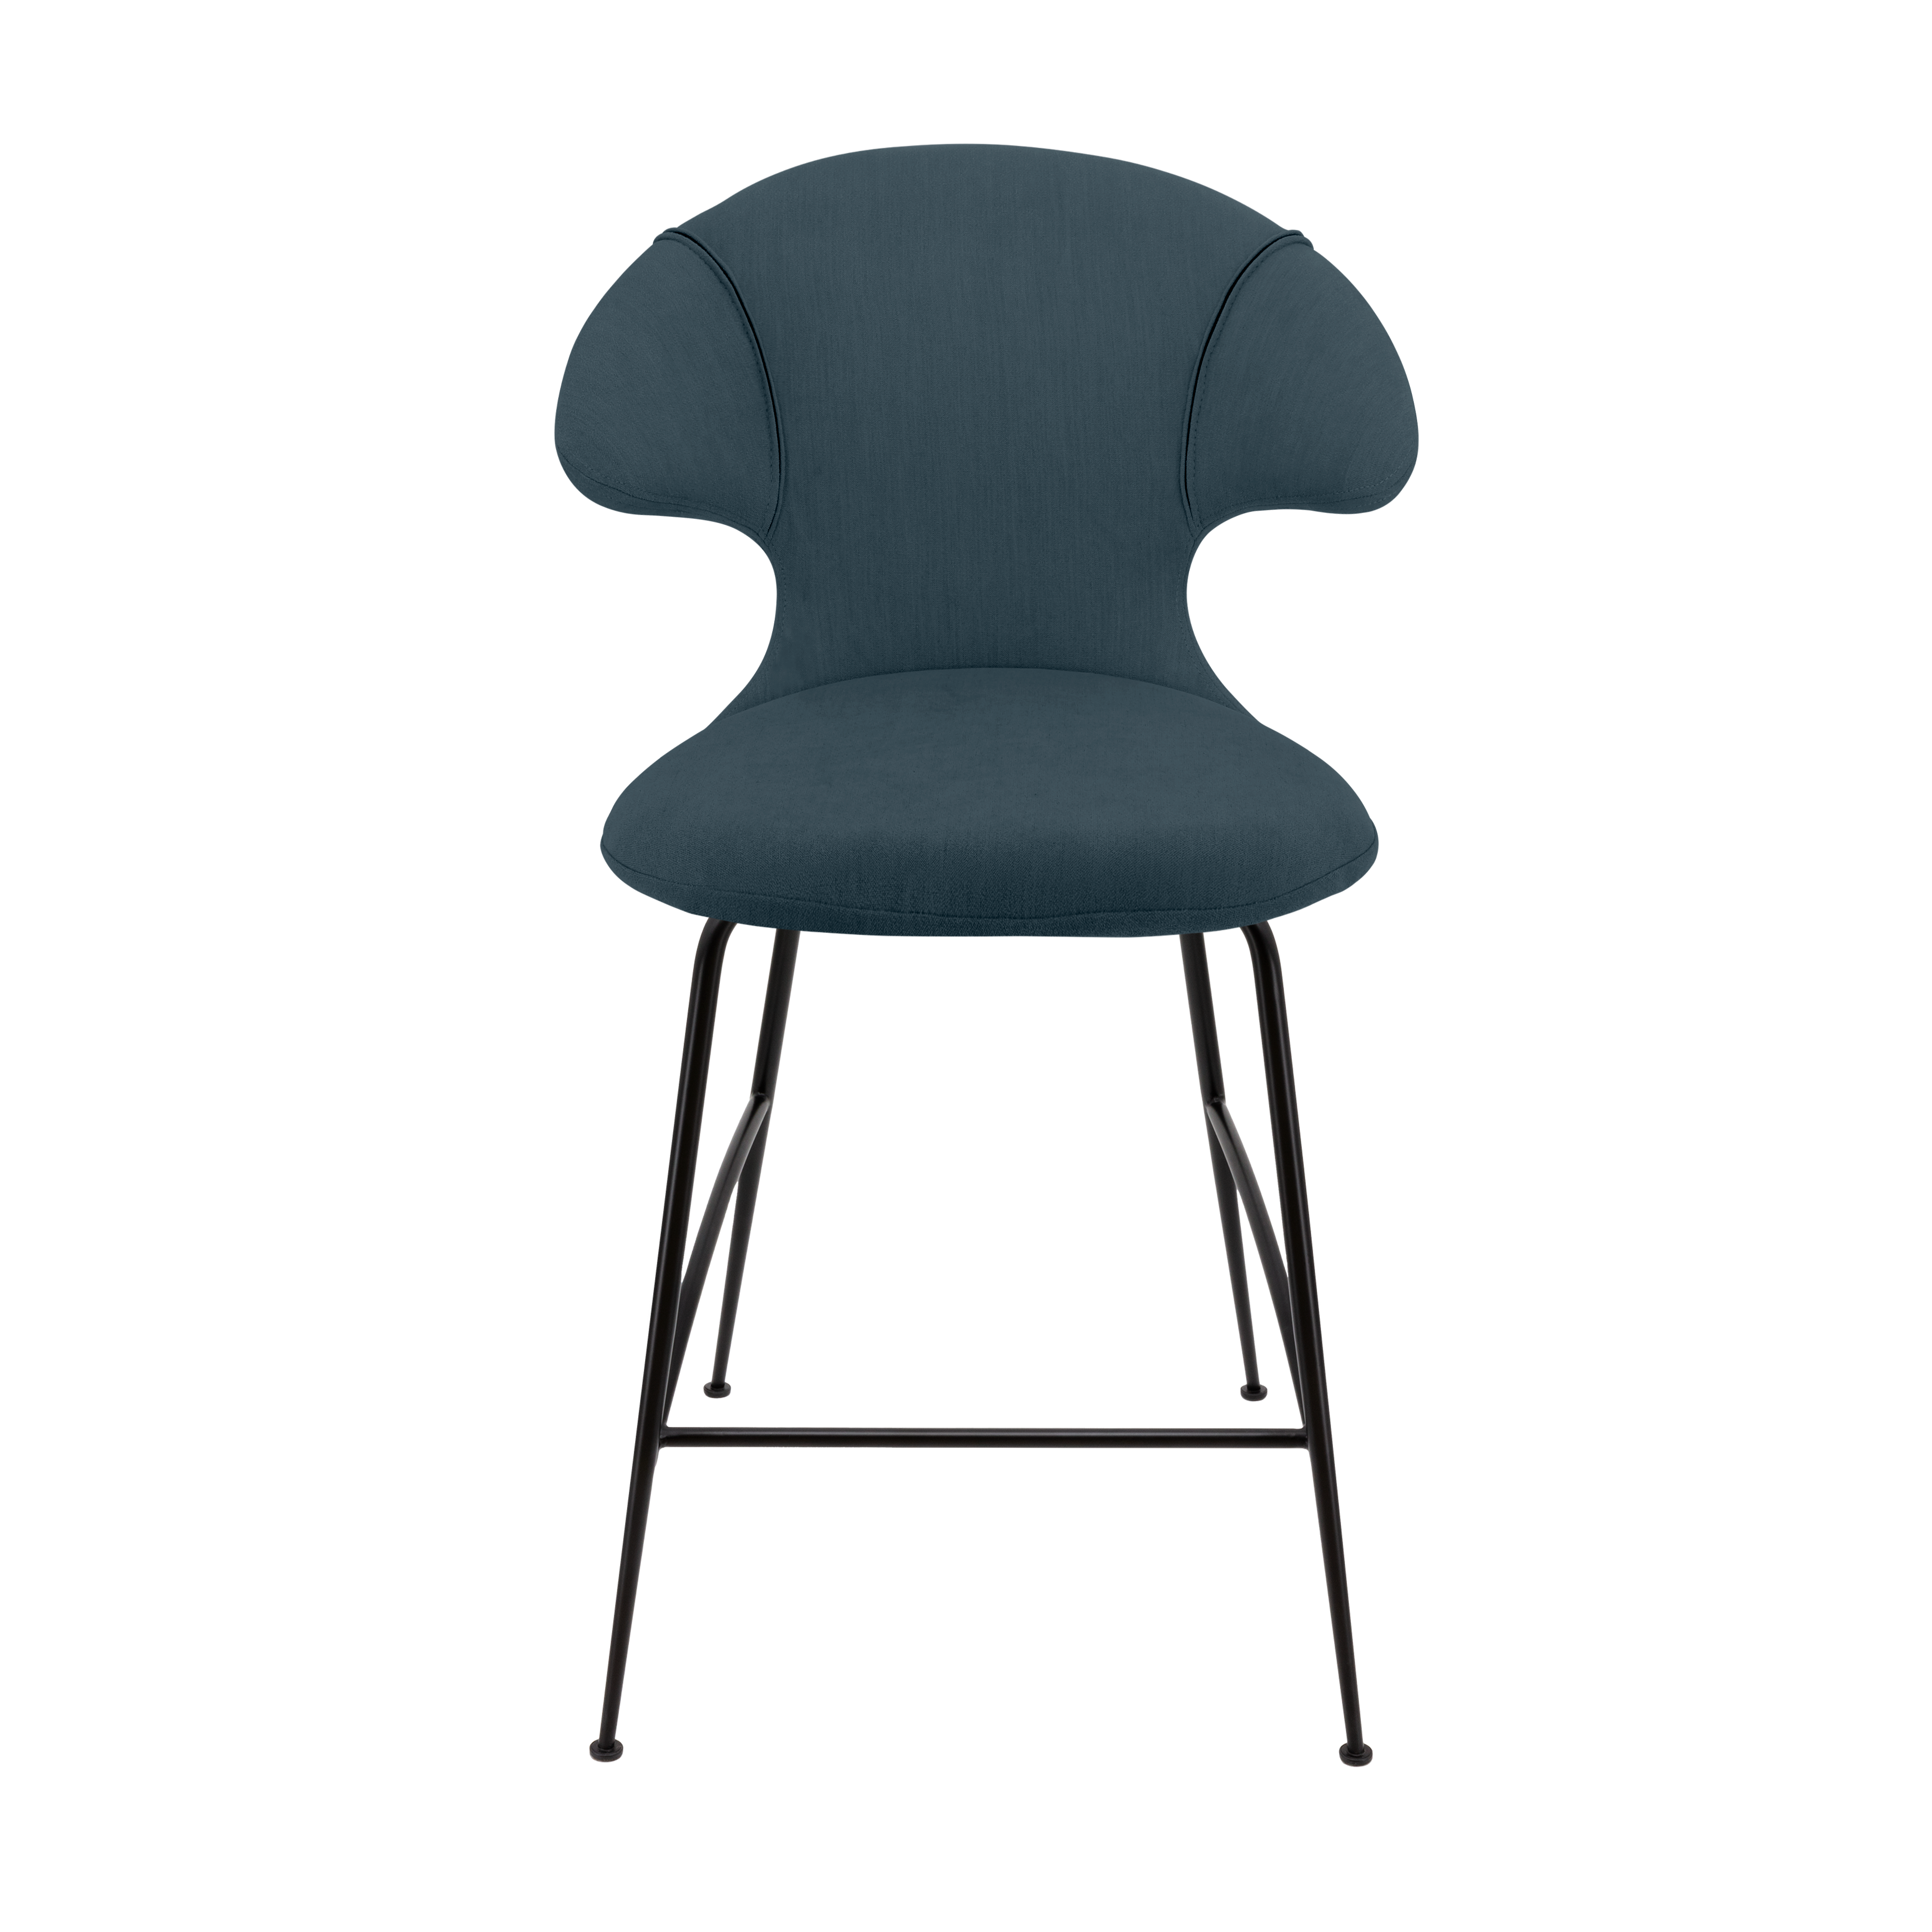 Time Flies Counter Stuhl in Jet Air Blue präsentiert im Onlineshop von KAQTU Design AG. Barstuhl mit Armlehne ist von Umage